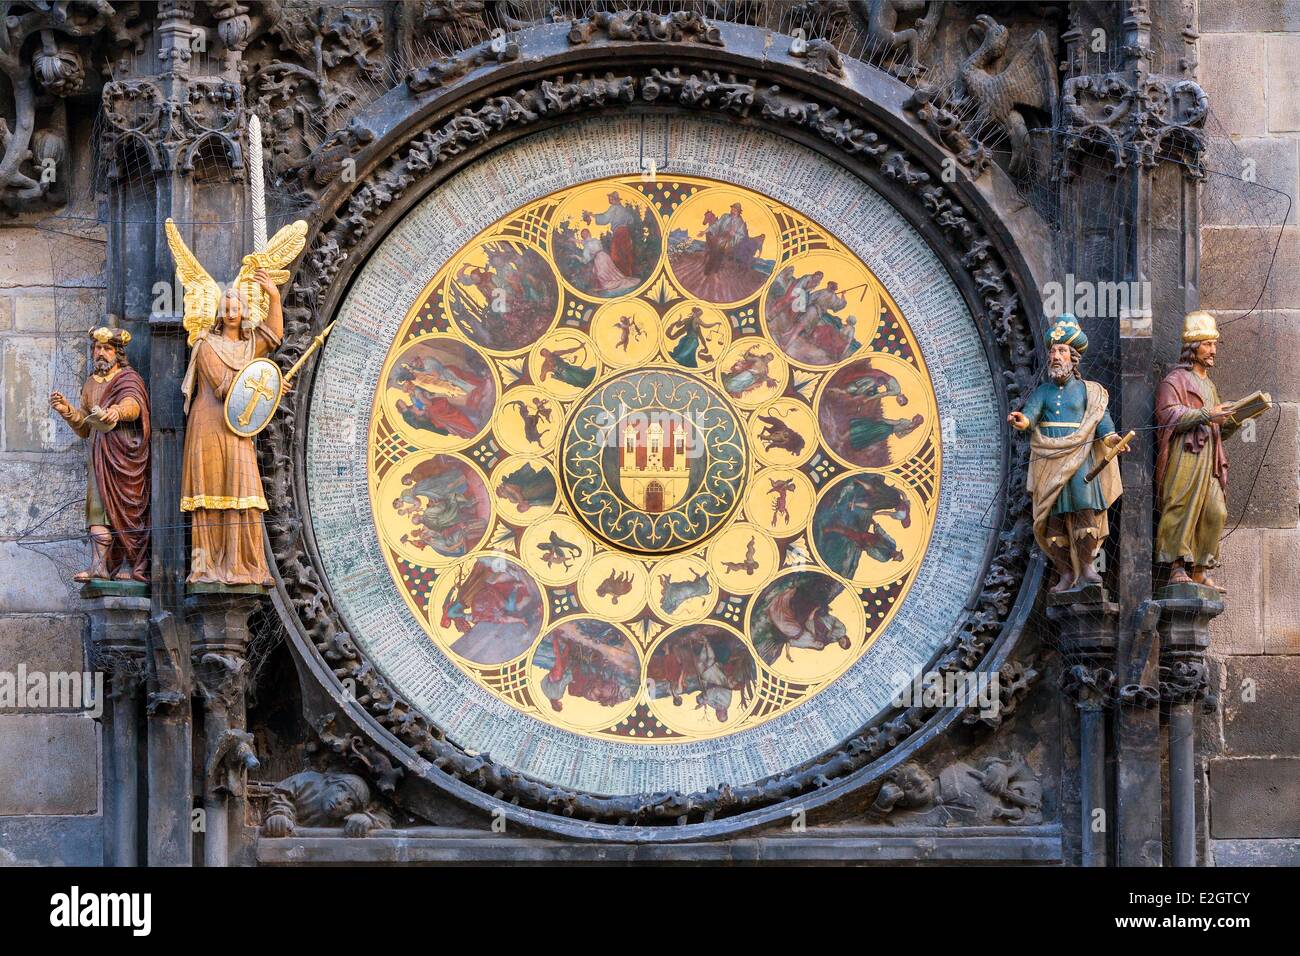 Repubblica Ceca Praga centro storico sono classificati come patrimonio mondiale dall' UNESCO orologio astronomico Foto Stock